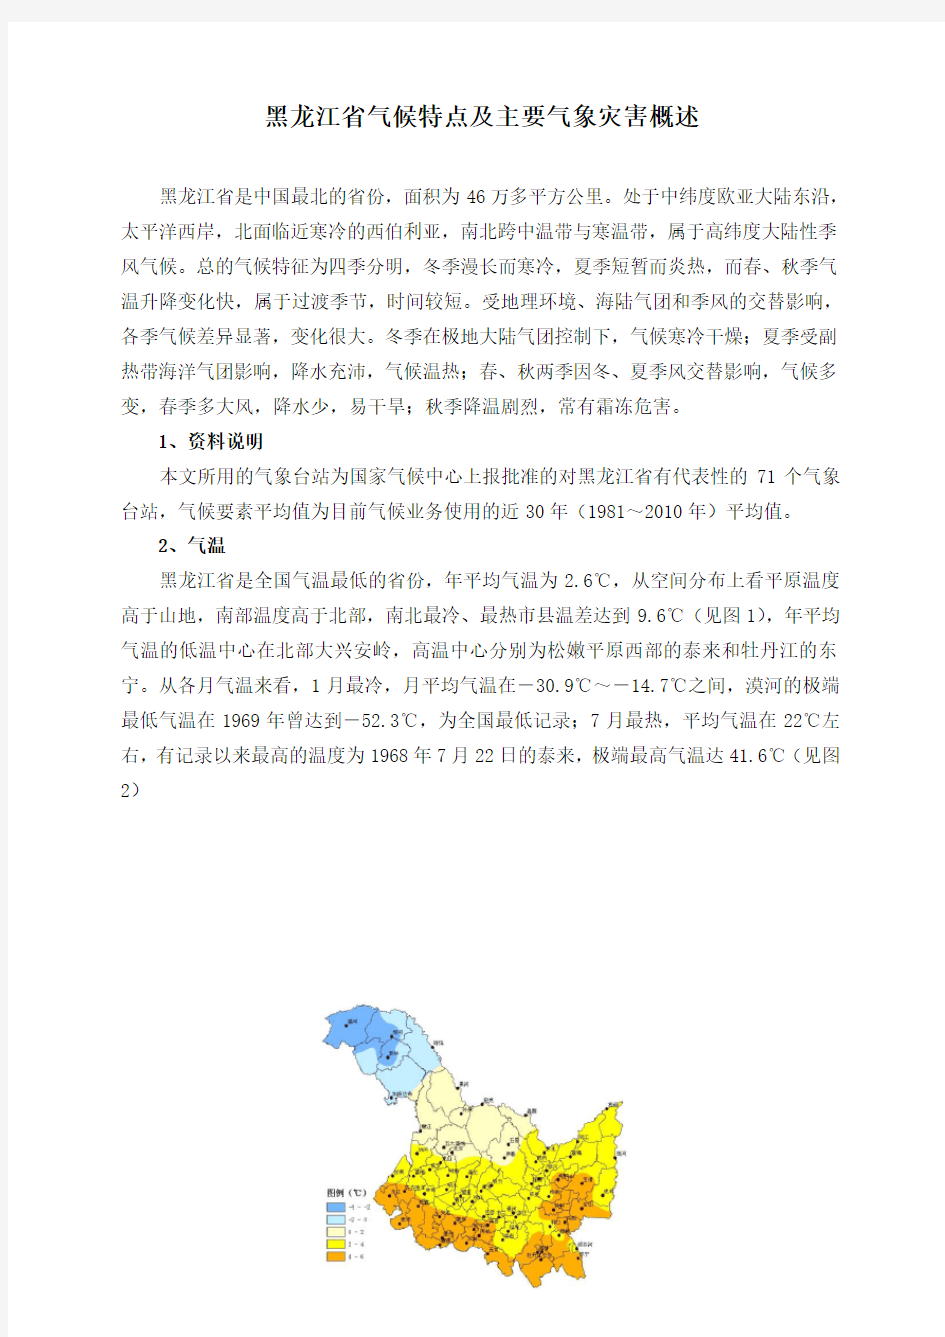 黑龙江省气候特点及主要气象灾害概述